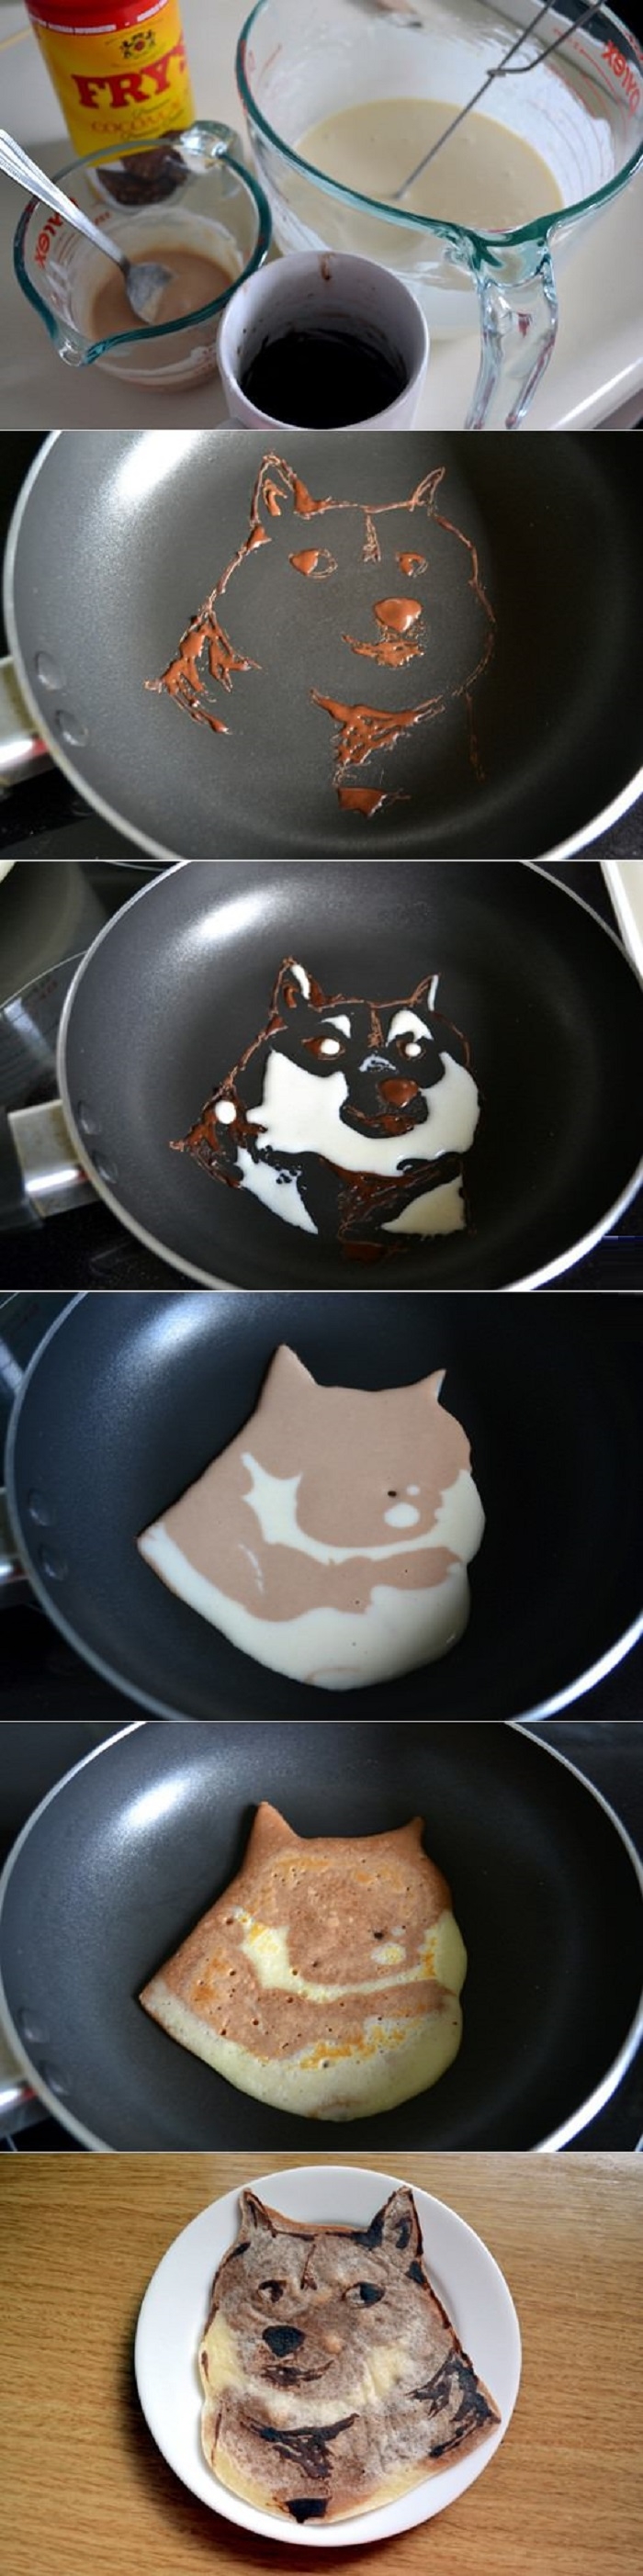 Amazing doge pancake